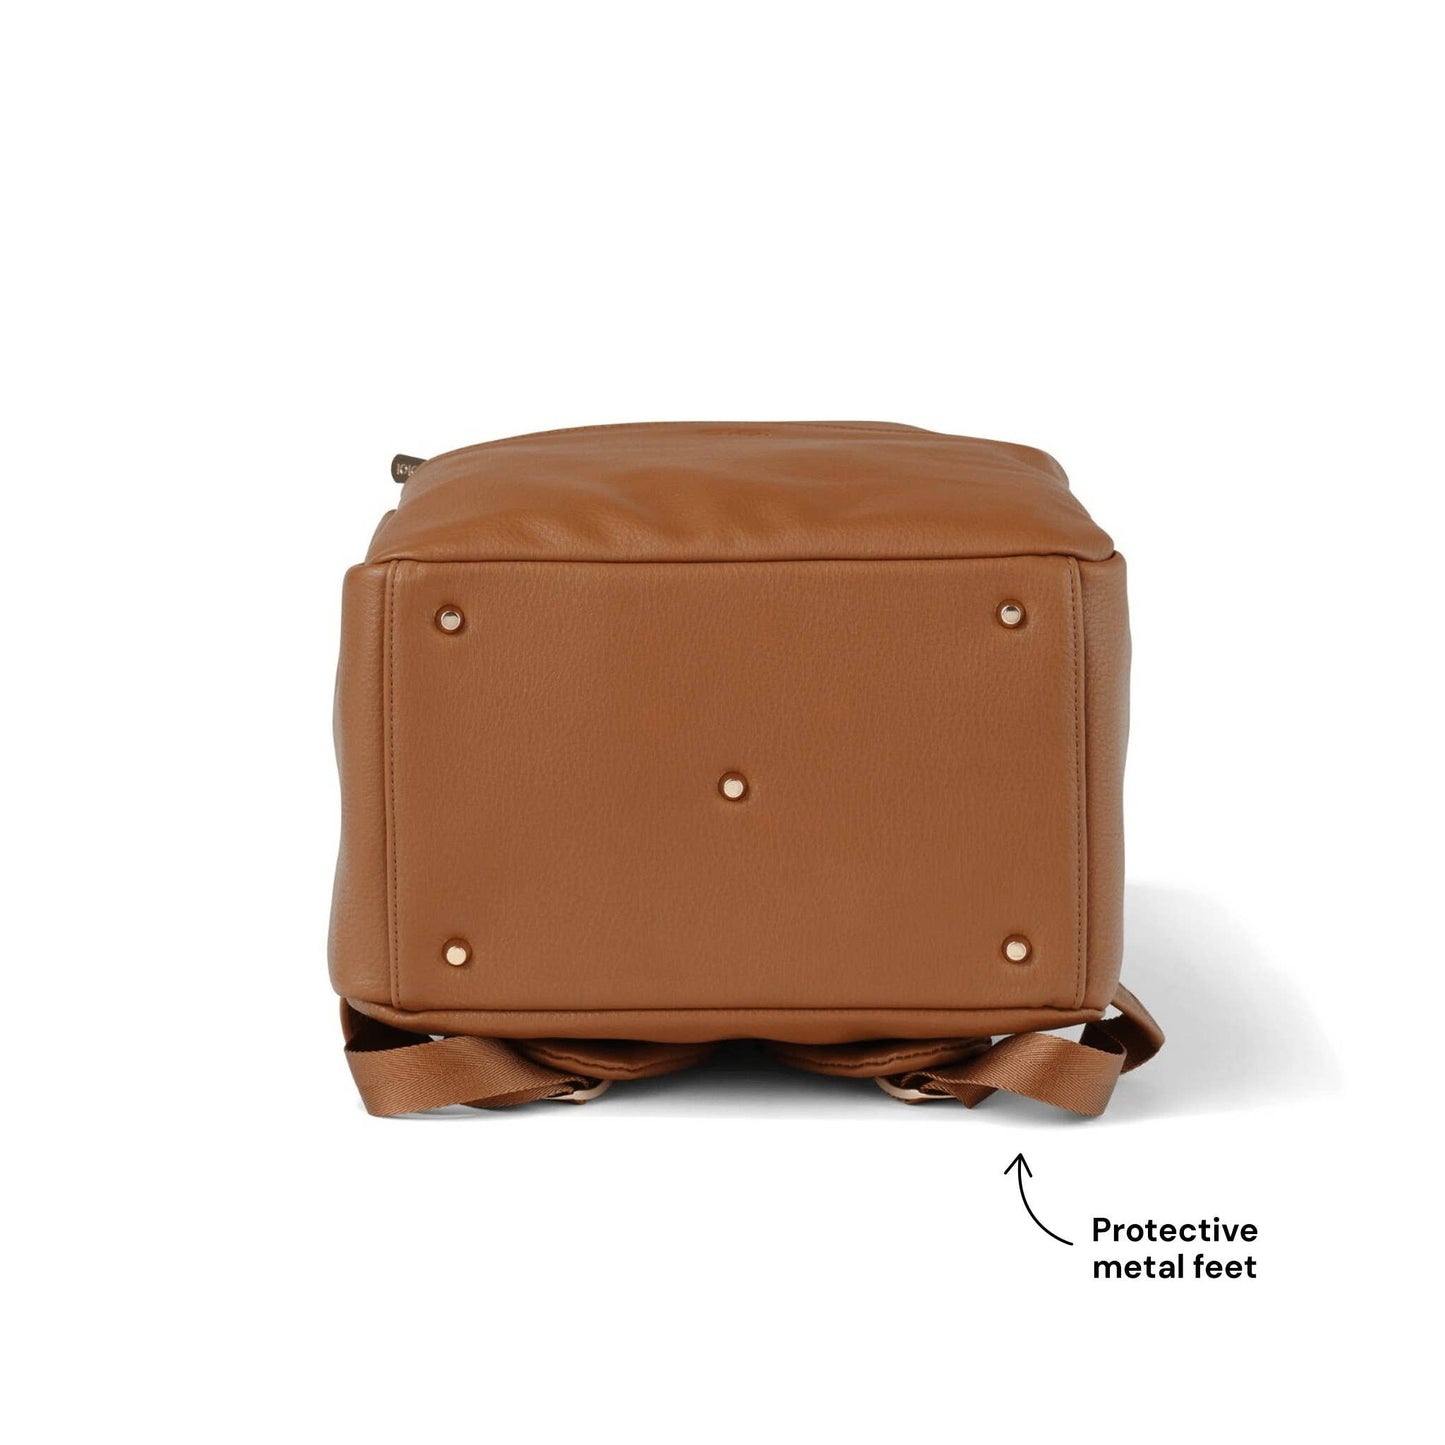 Multitasker Nappy Backpack - Chestnut Brown Vegan Leather